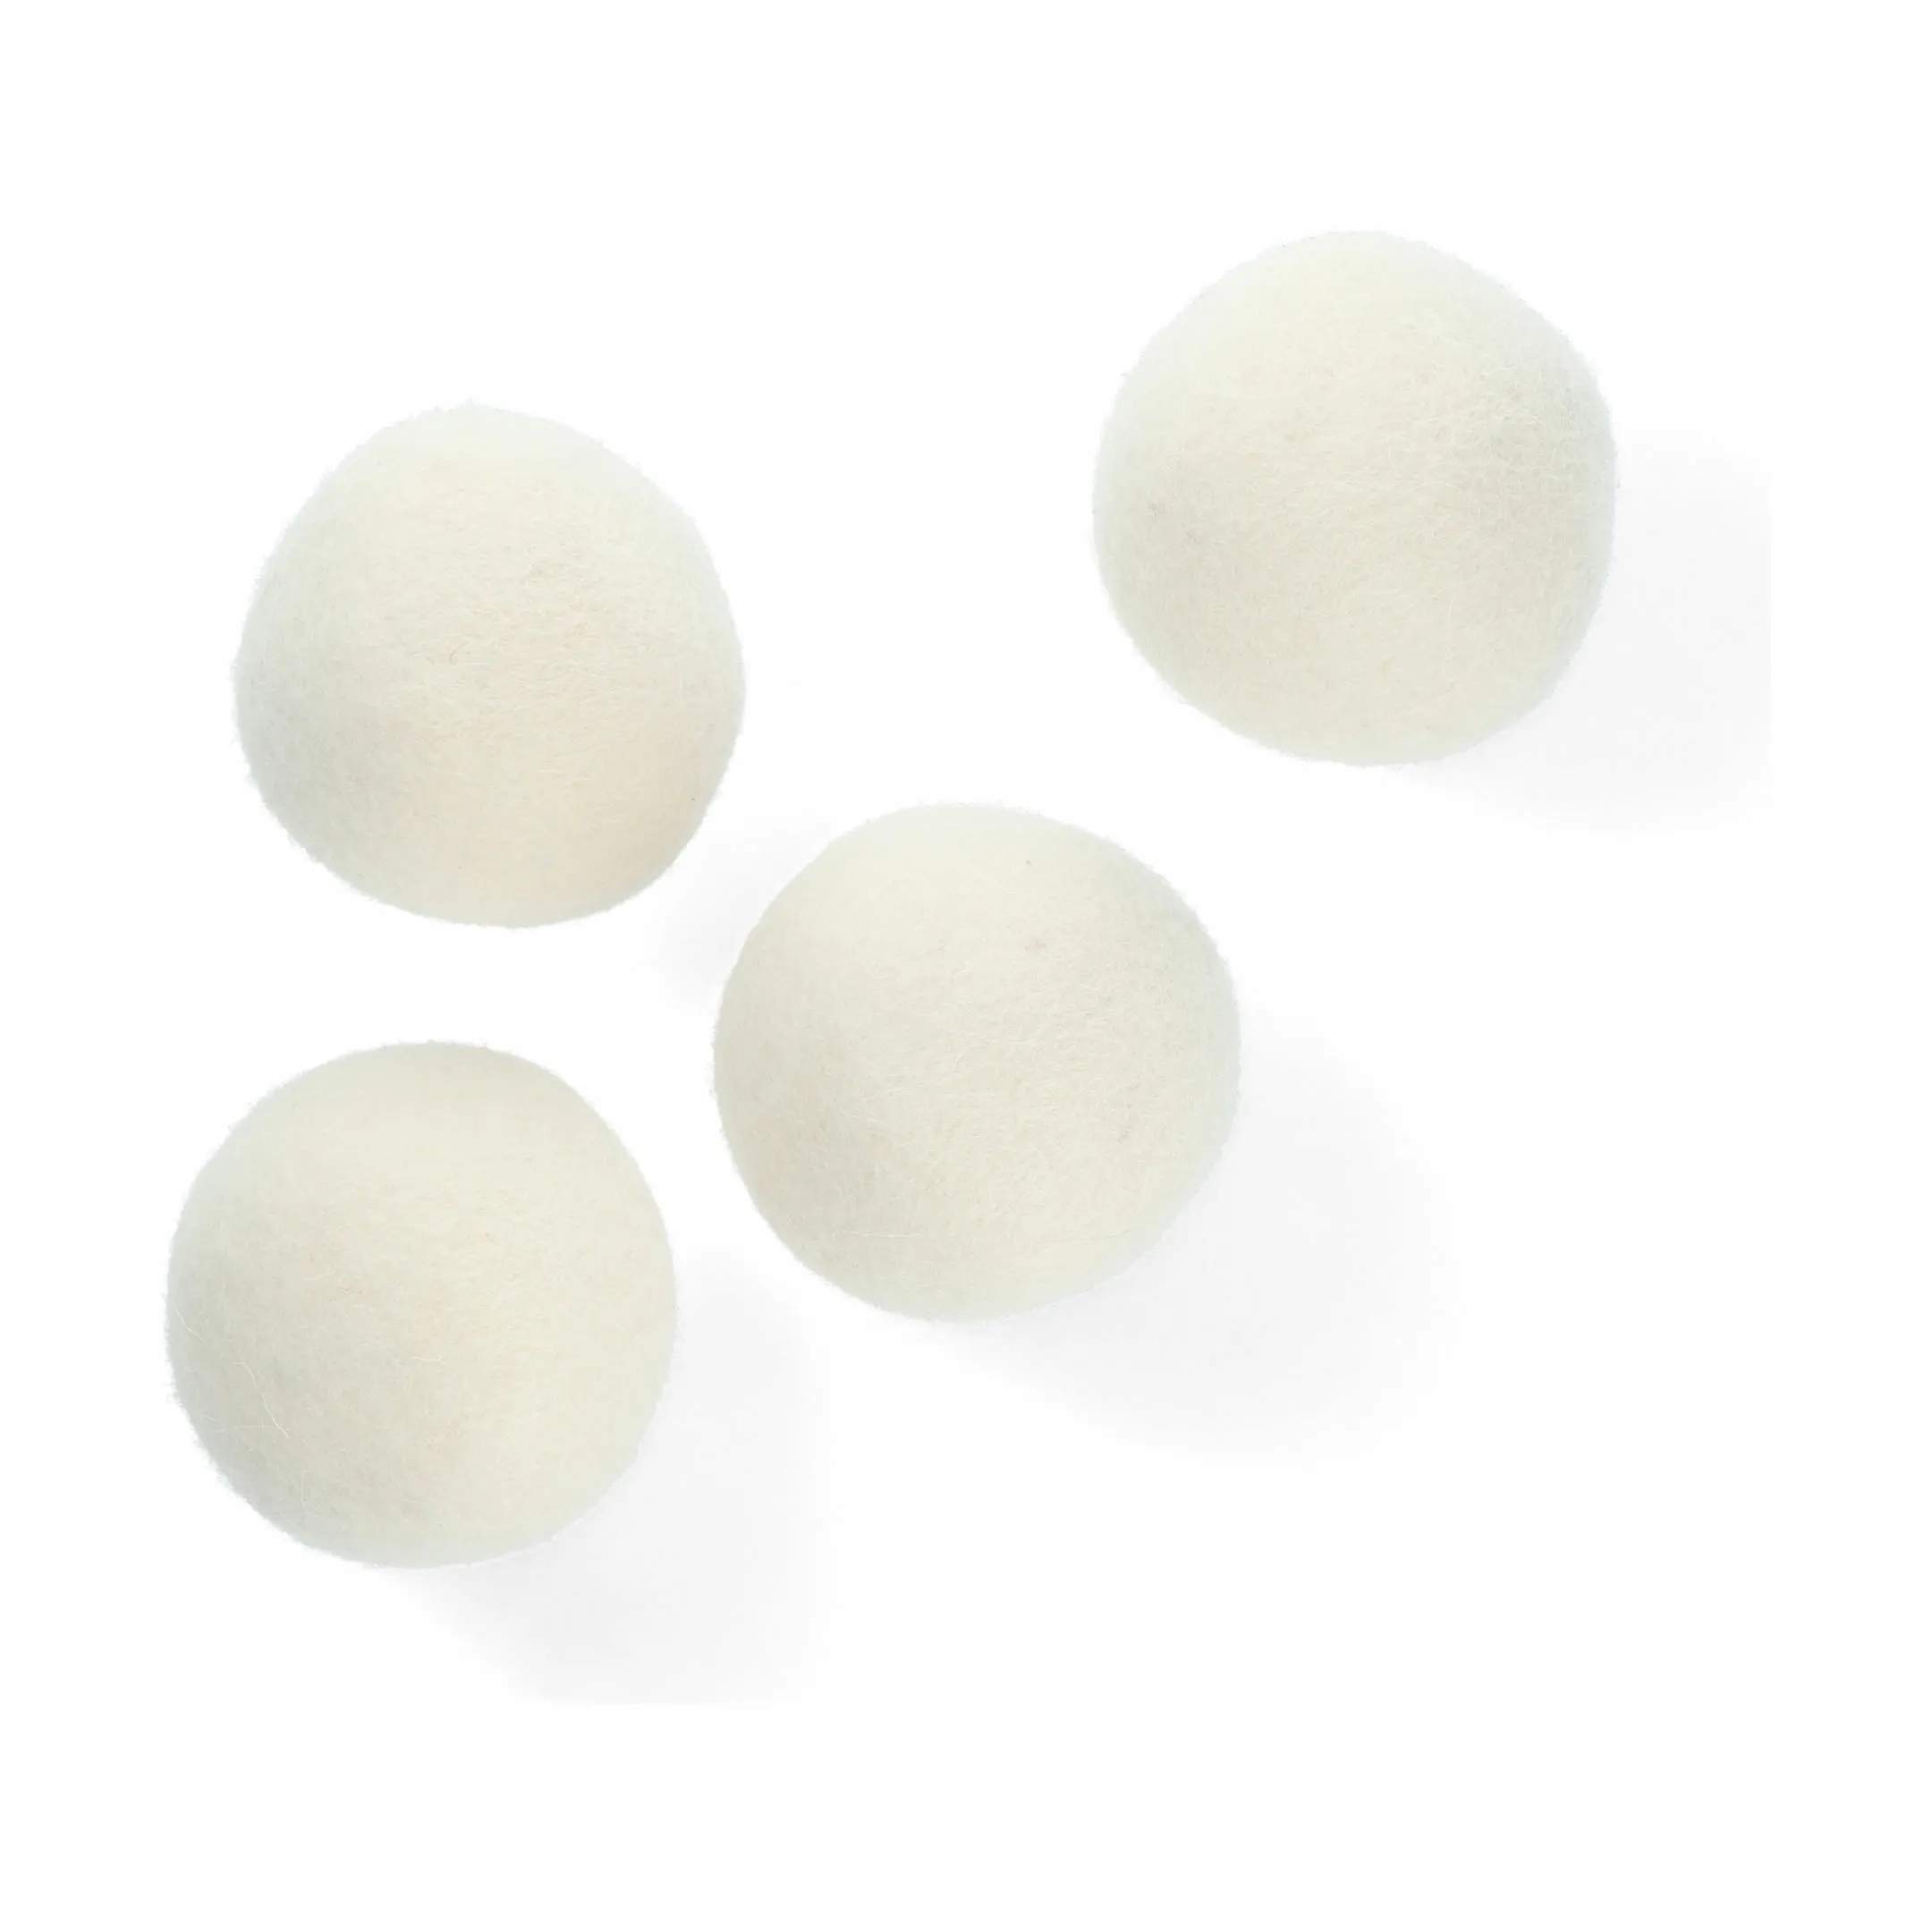 Dryer Balls - 4 stk., hvid, large